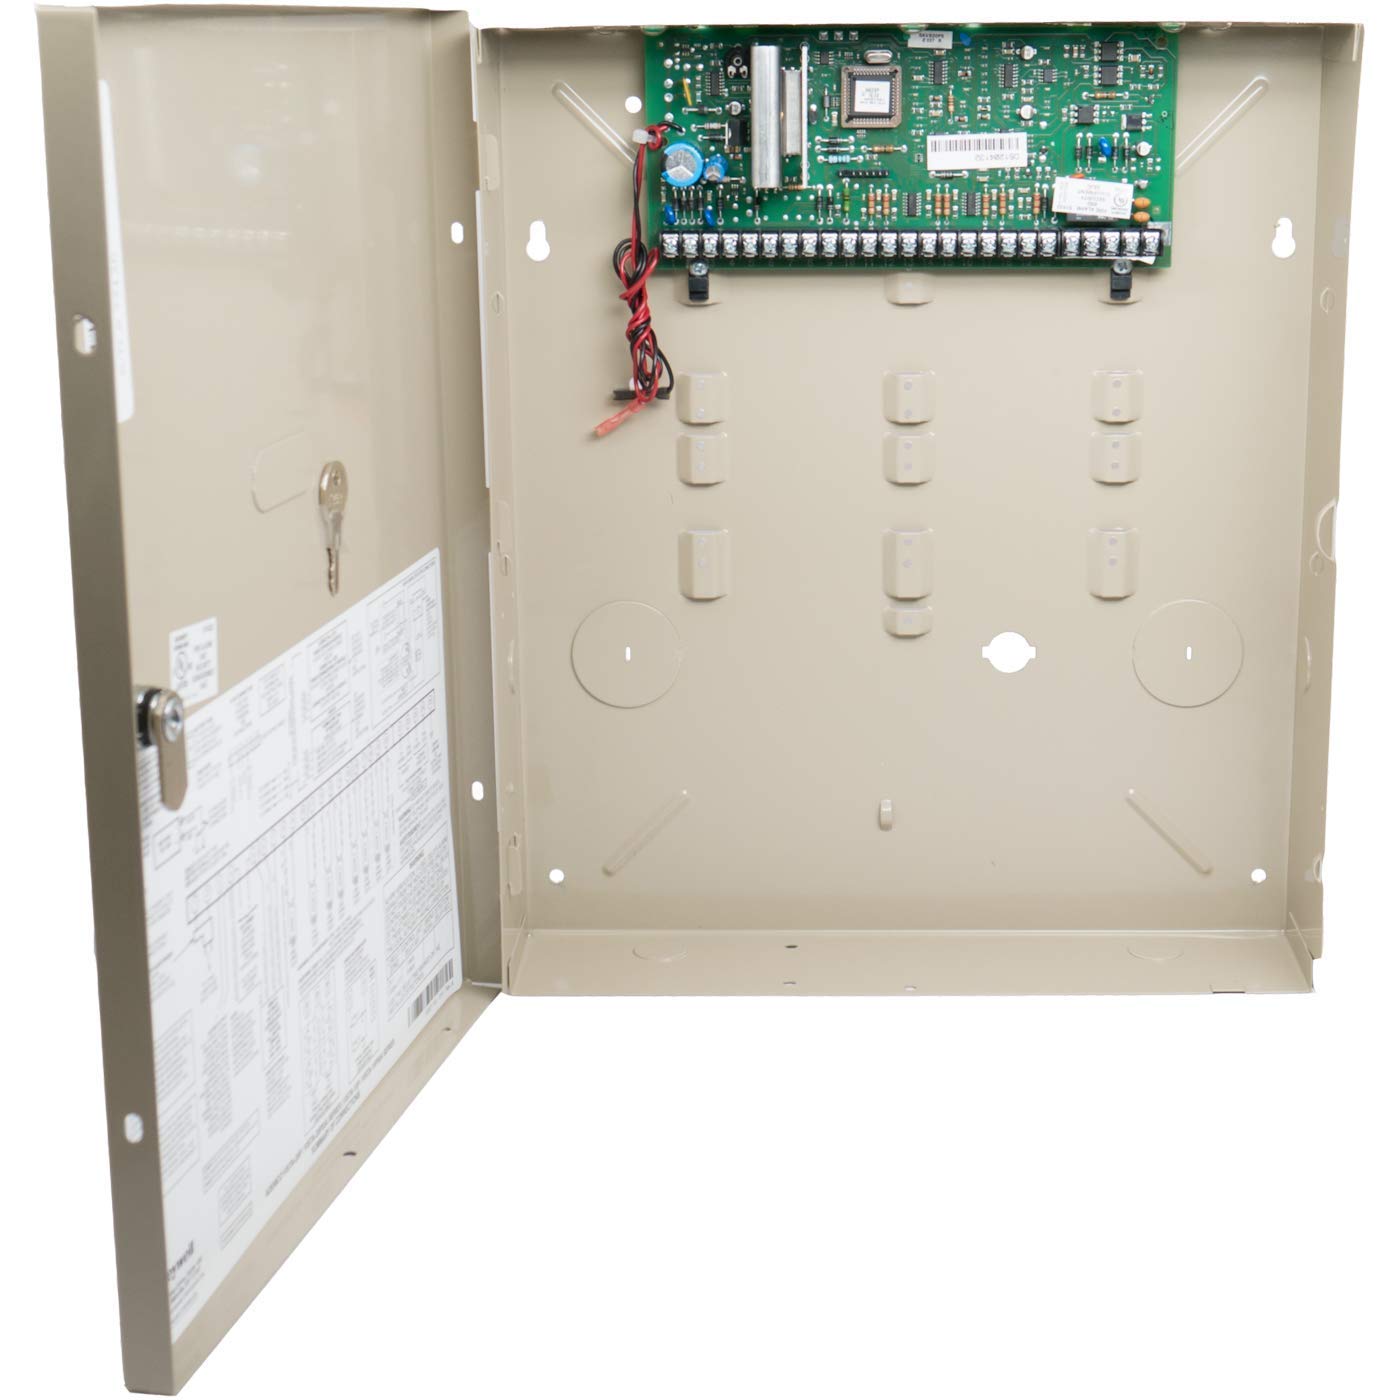 Book Cover Honeywell VISTA-20P Ademco Control Panel, PCB in Aluminum Enclosure